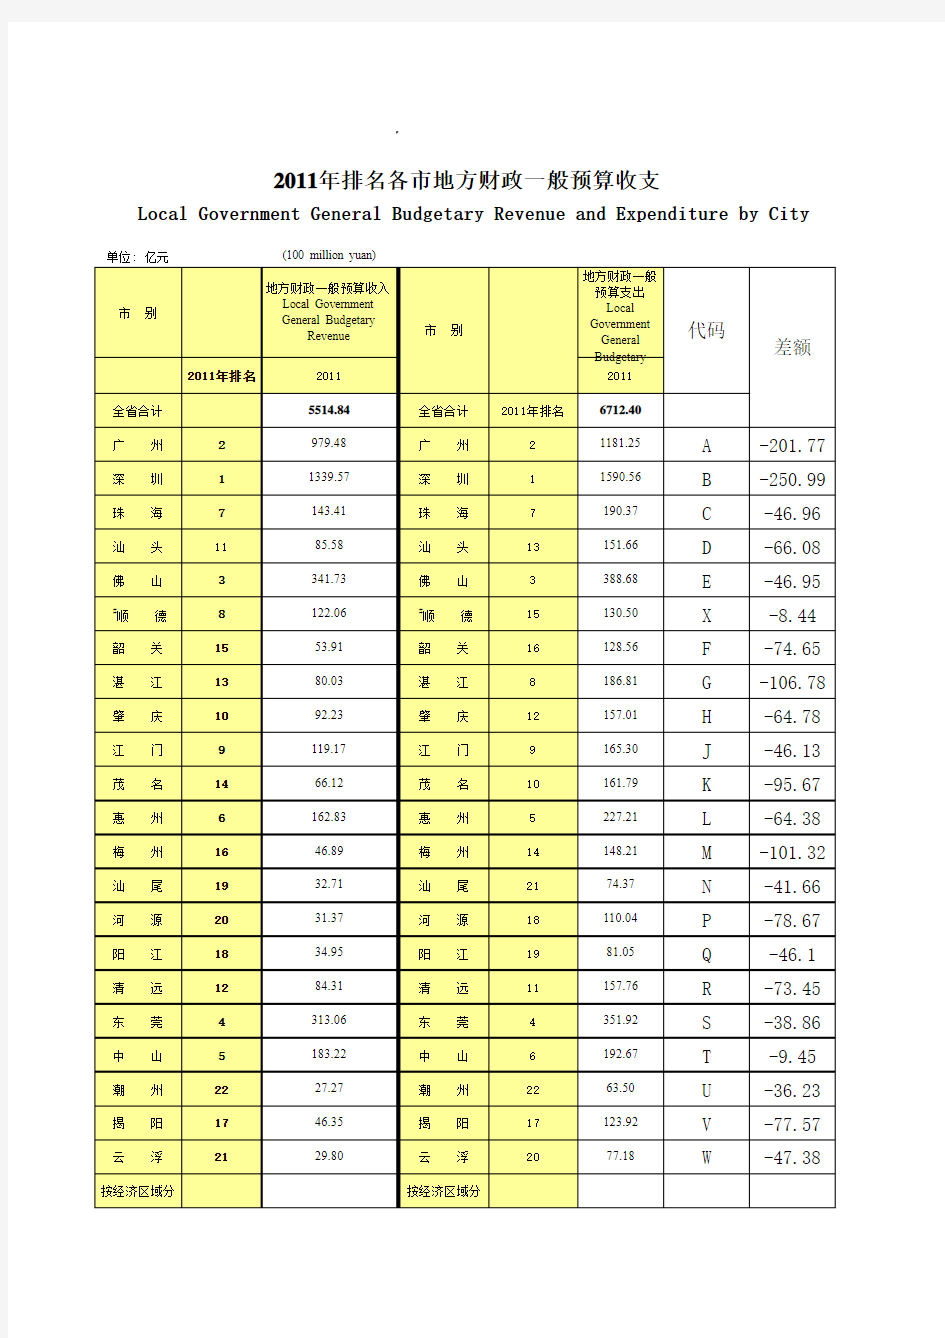 2011年广东省各市地方财政一般预算收支排名(摘自统计年鉴)